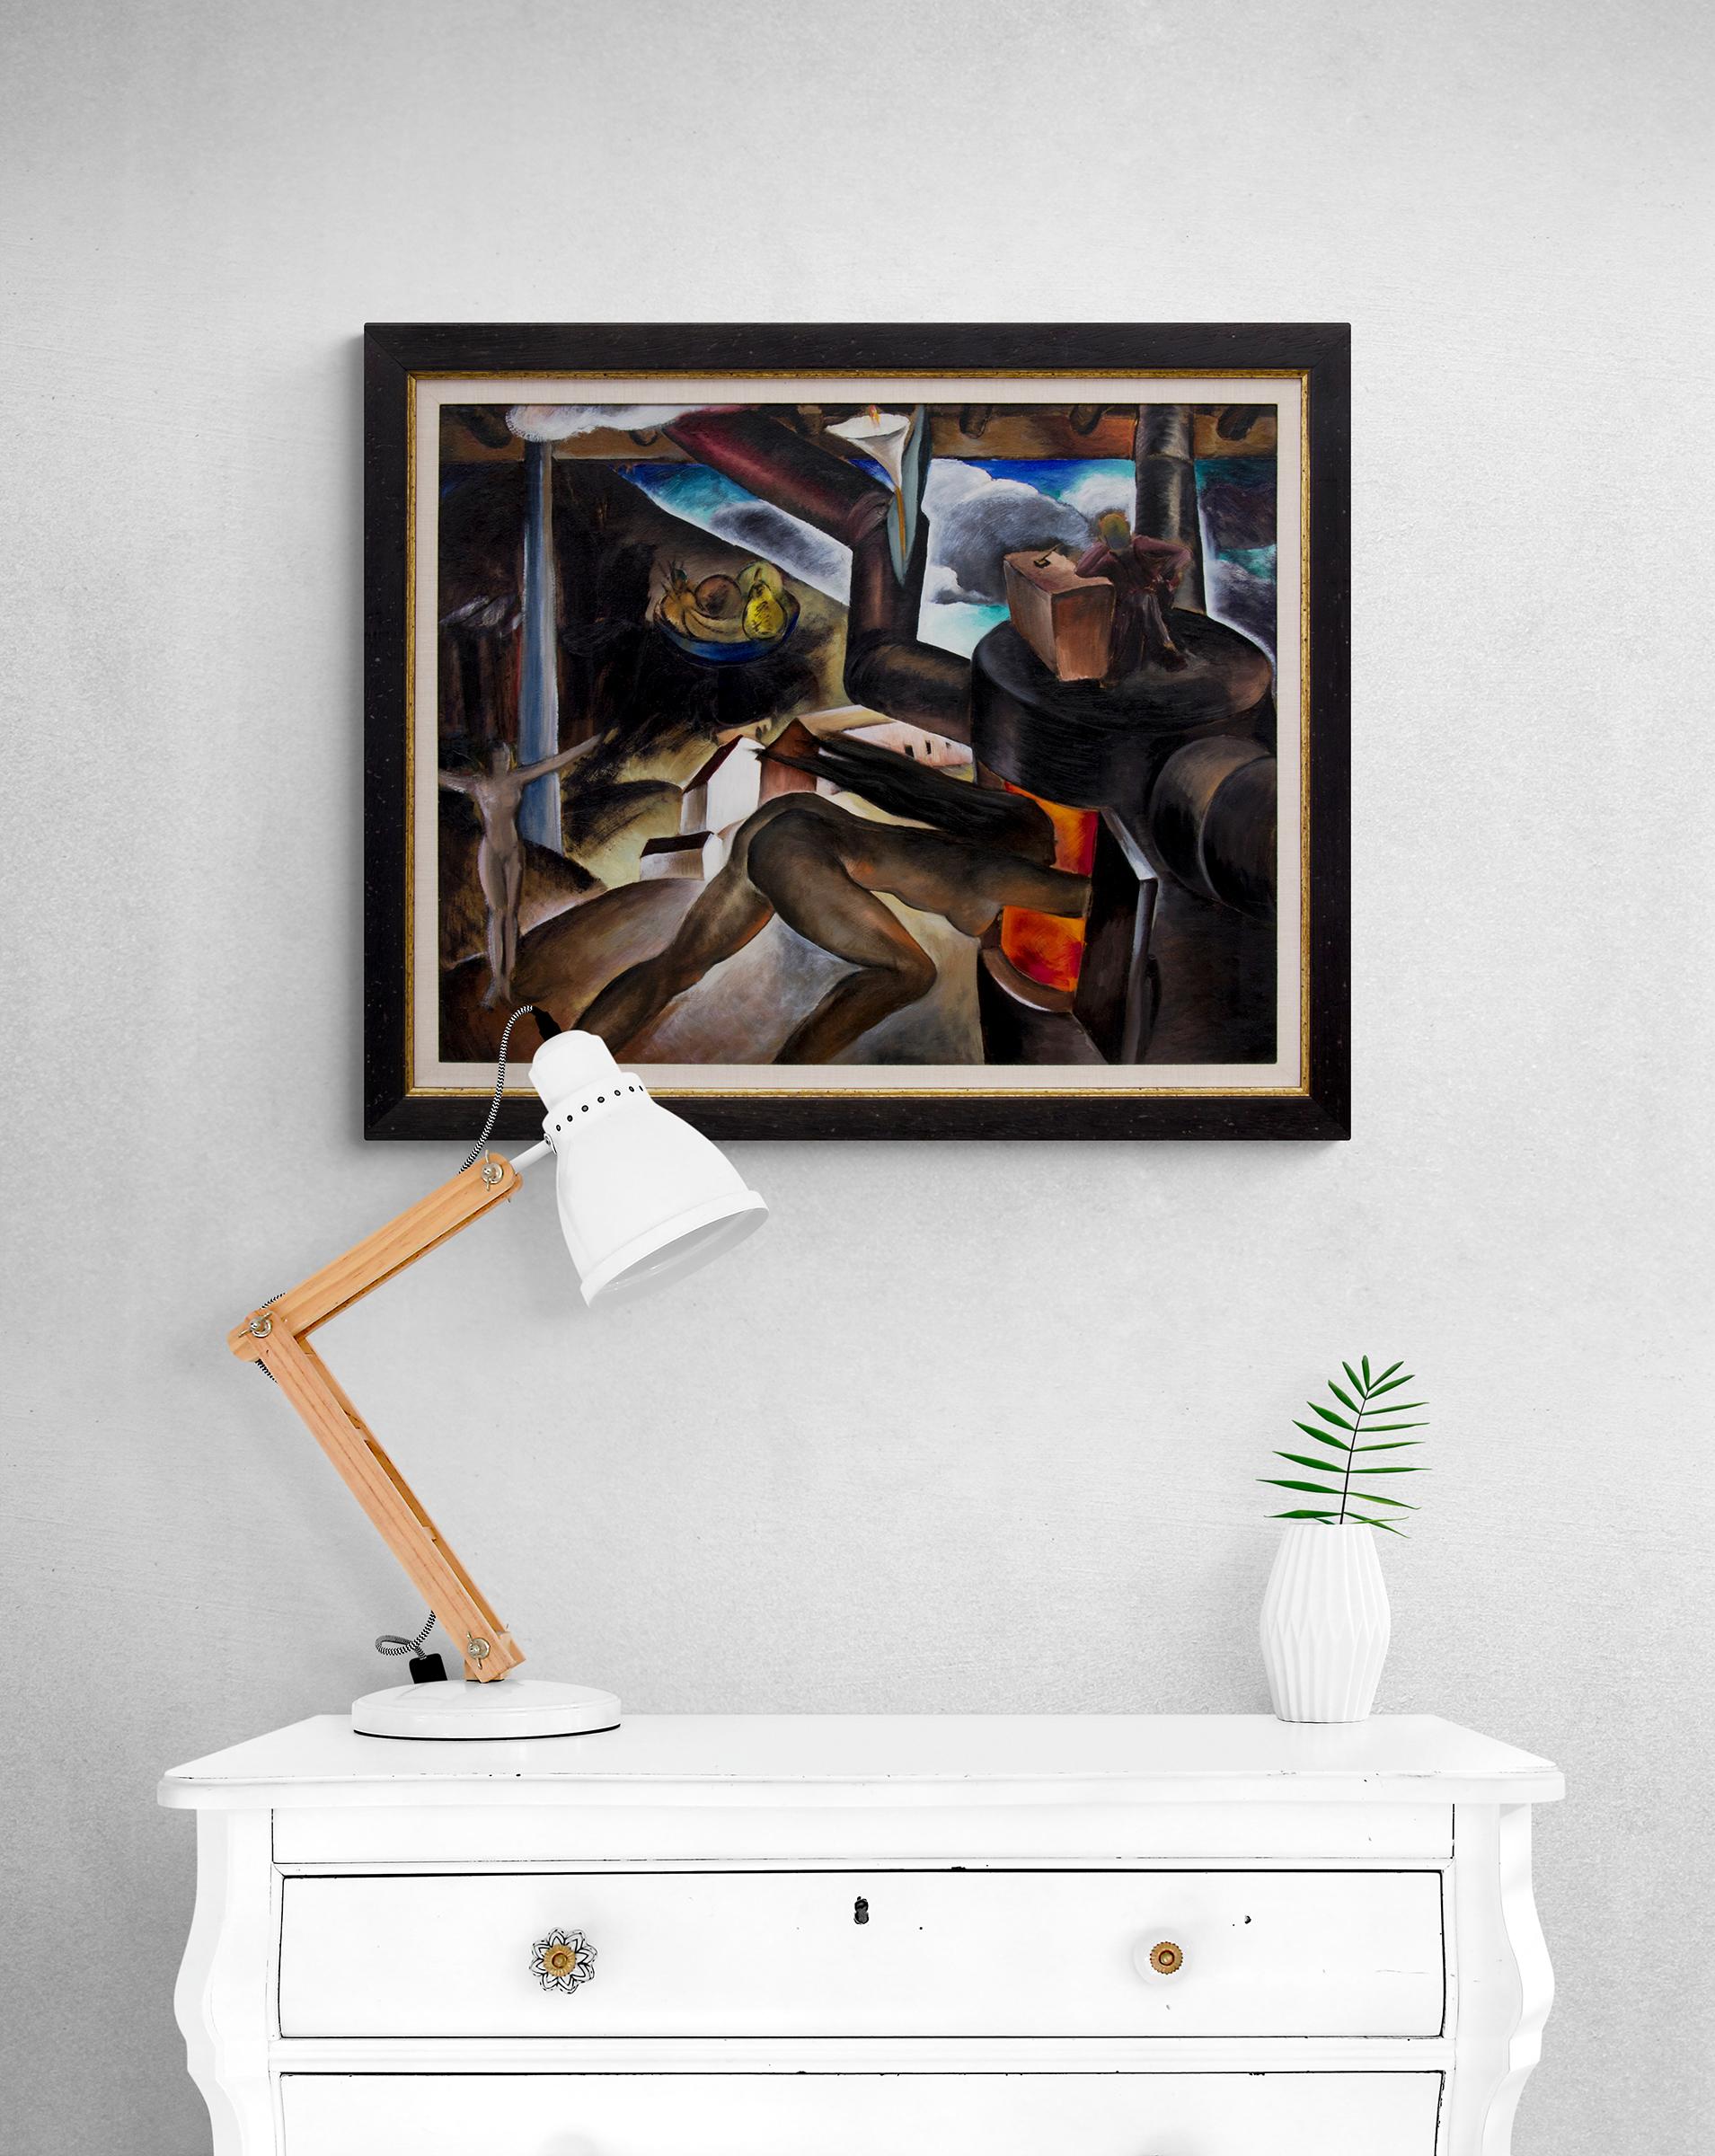 Femme nue surréaliste dans un paysage industriel, peinture à l'huile moderne des années 1930 - Surréalisme Painting par Virginia True